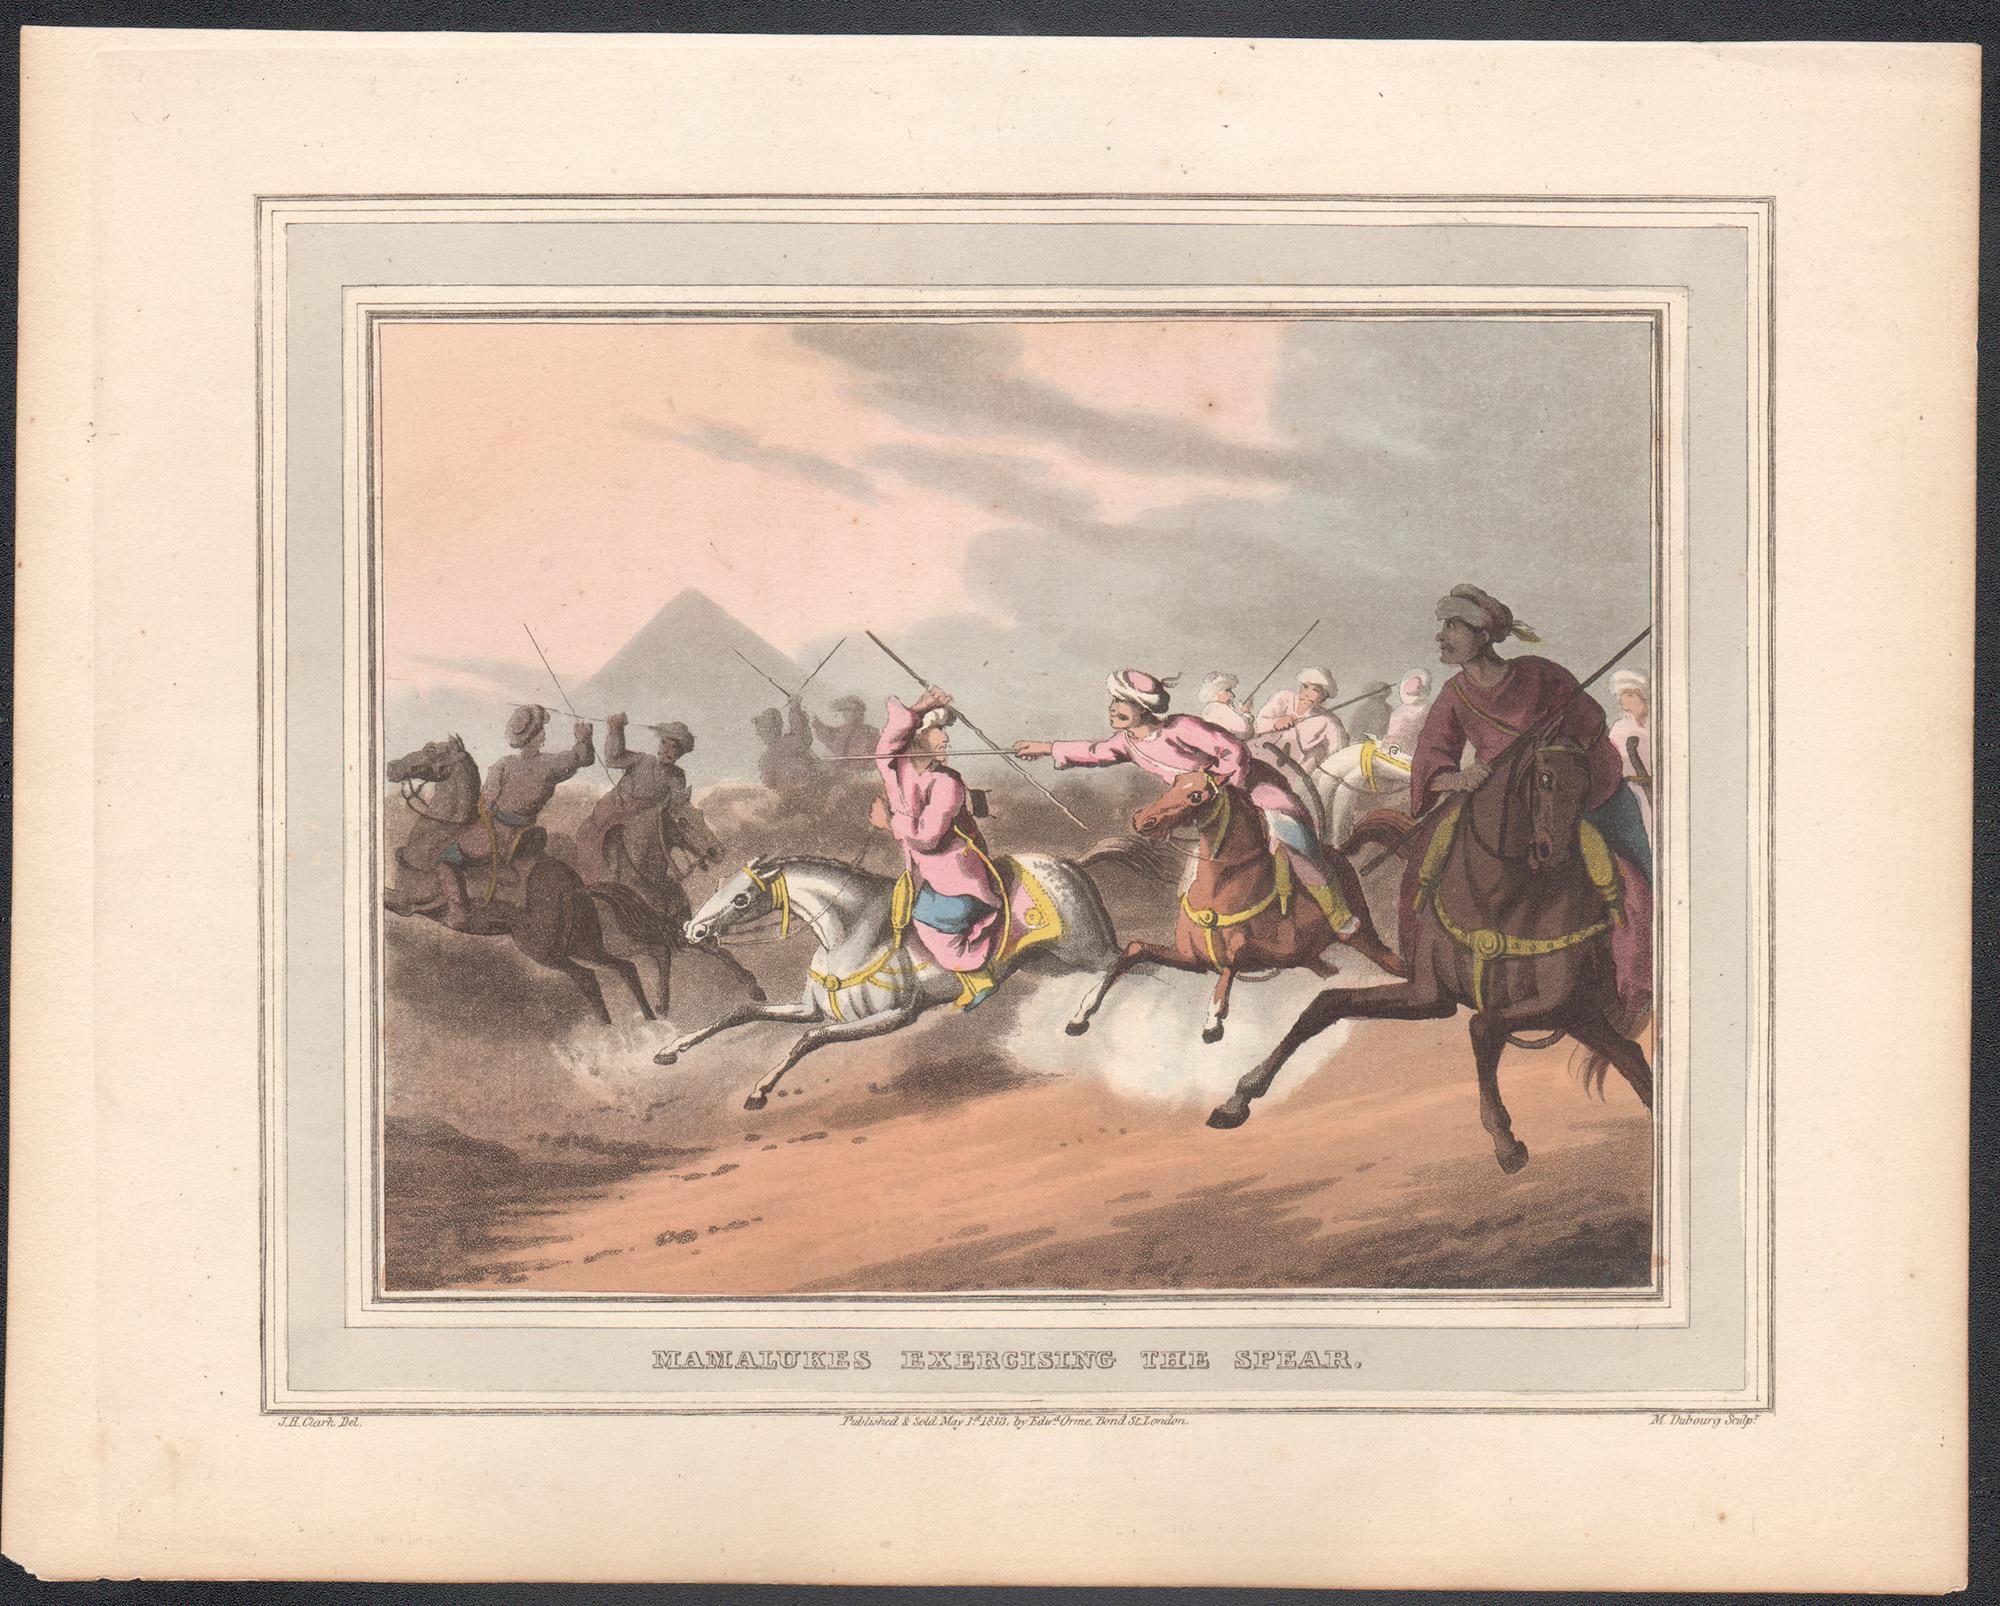 Mamalukes exerçant la lance, gravure aquatinte de chasse, 1813 - Print de Samuel Howitt